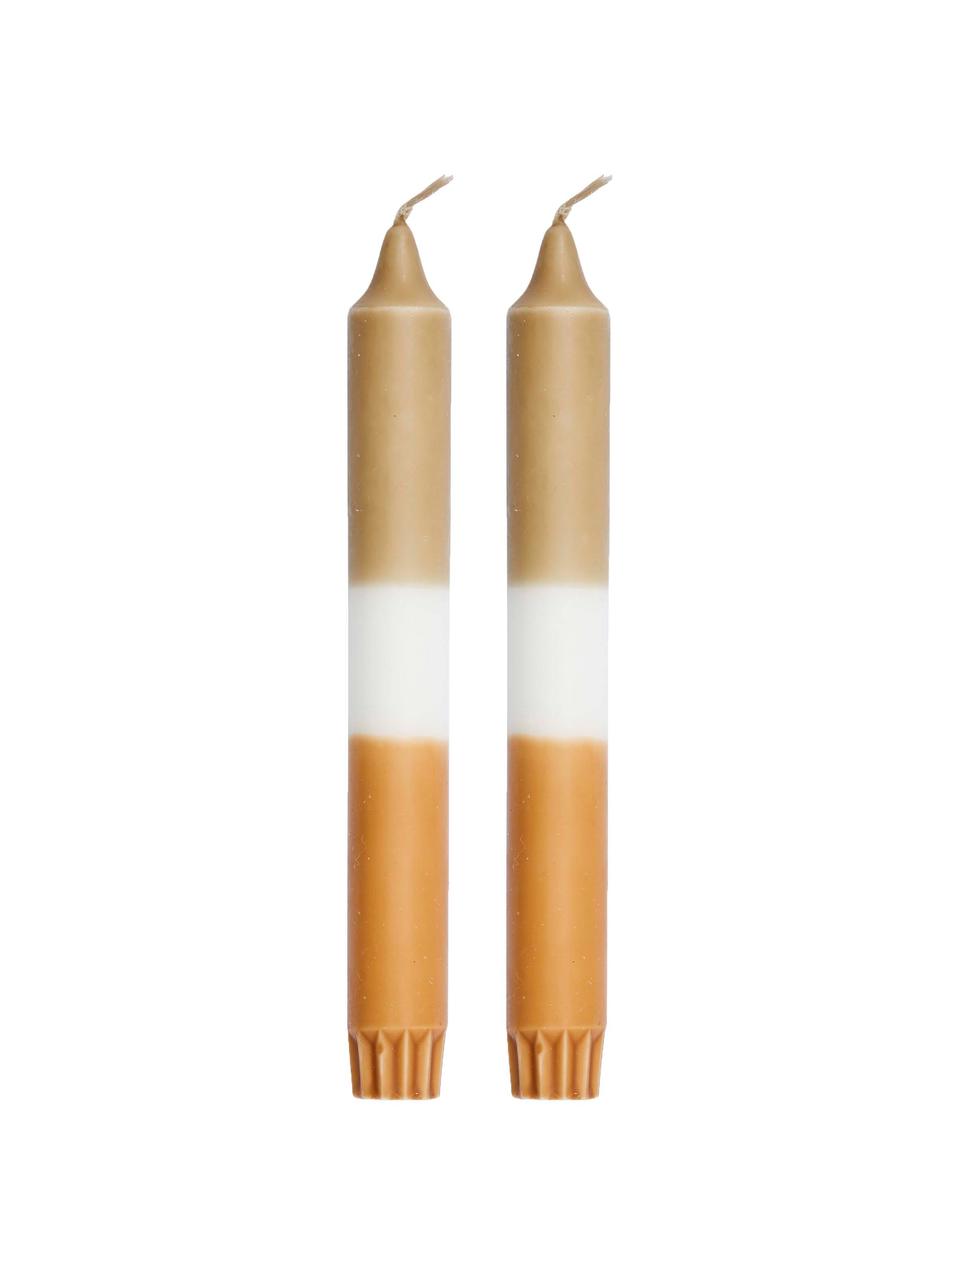 Dlhá sviečka Tone, 2 ks, Parafínový vosk, Biela, oranžová, odtiene zlatej, Ø 2 x V 19 cm